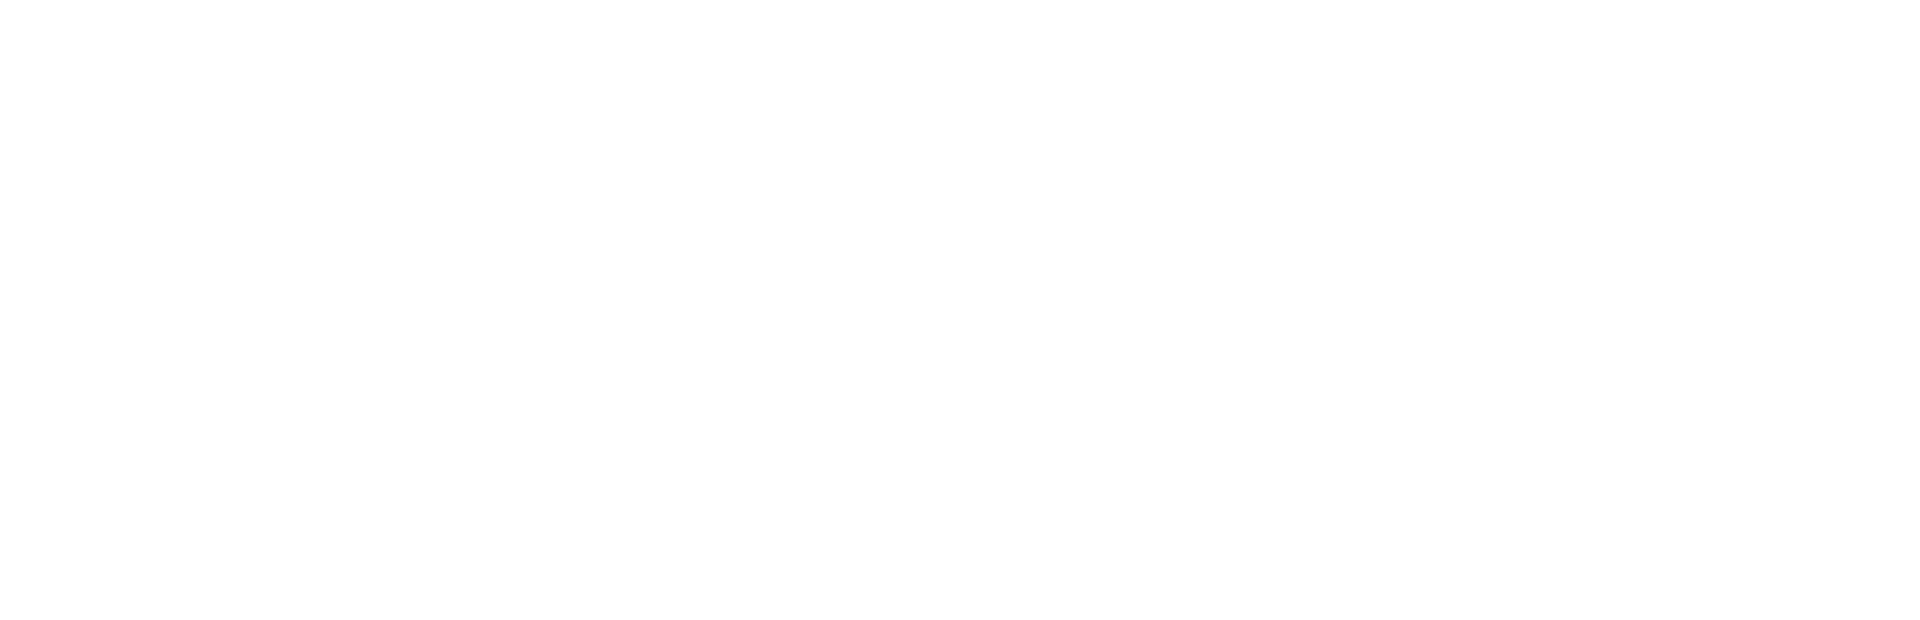 Fear & Fury